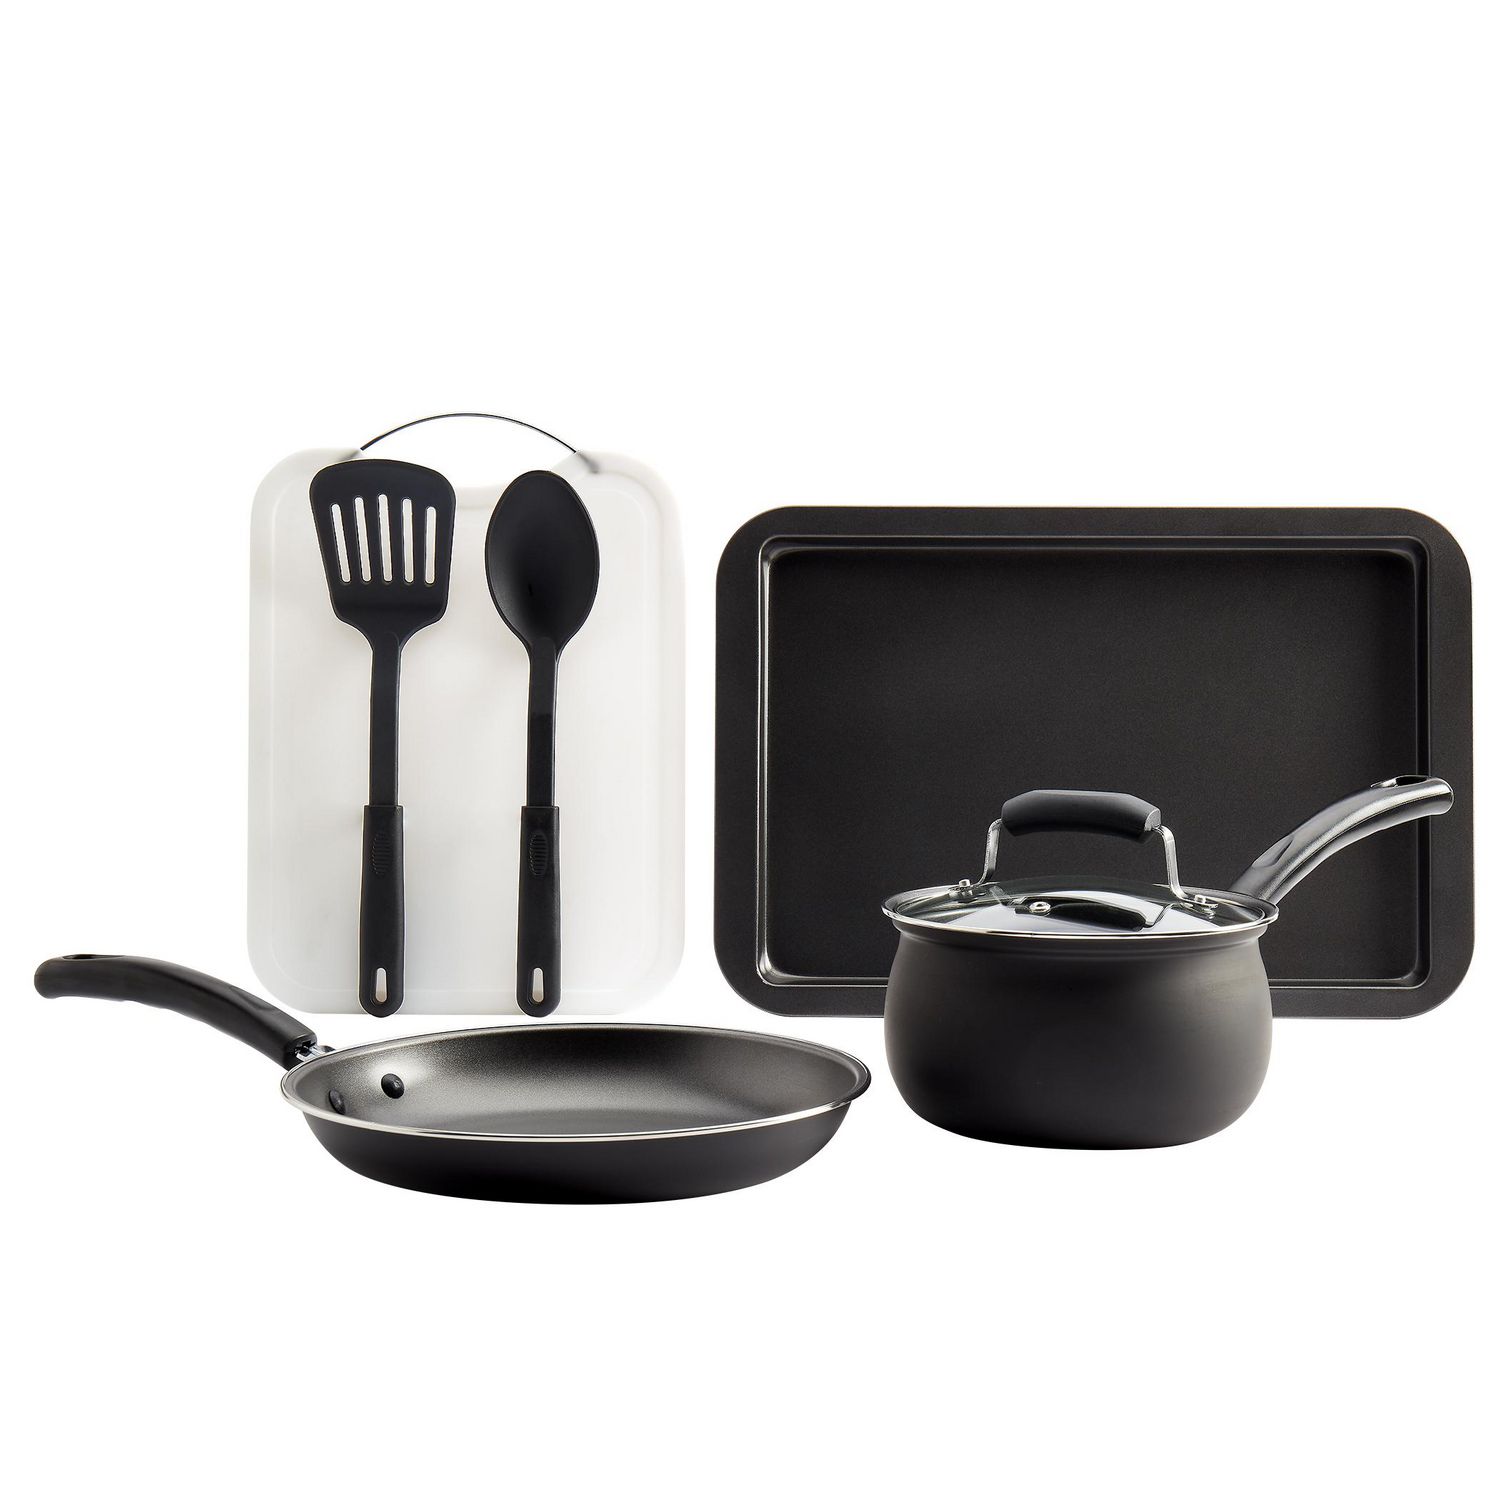 Basic Essentials 25Pc Aluminum Cookware Set